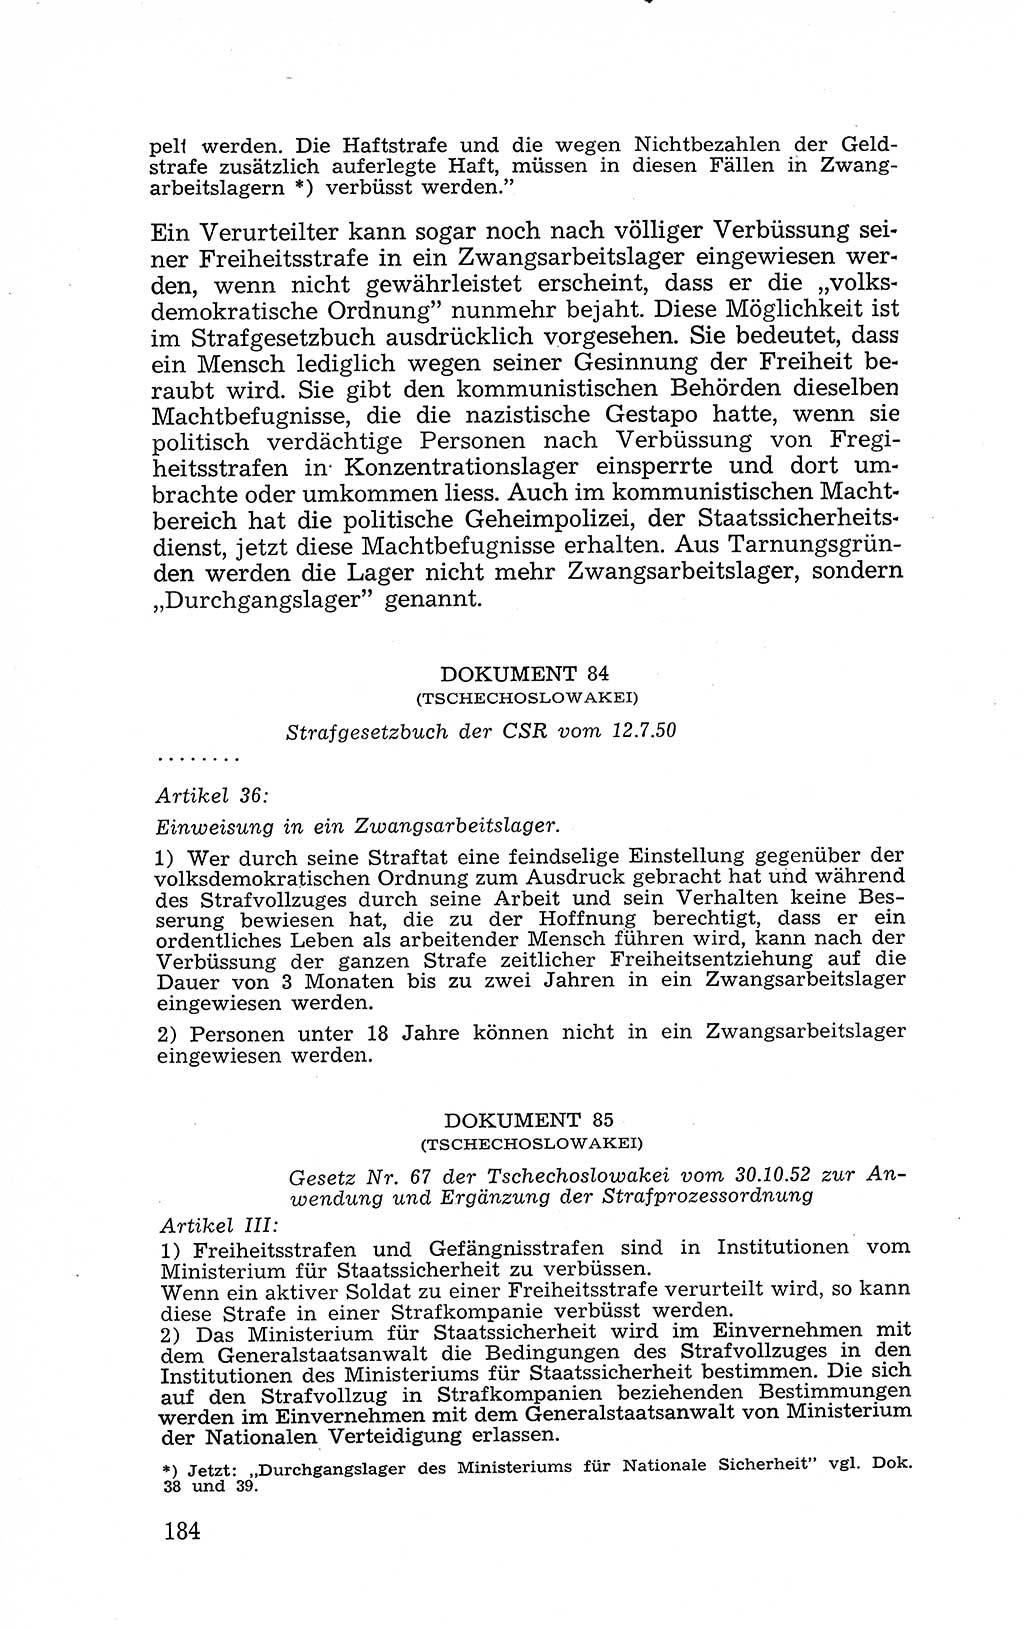 Recht in Fesseln, Dokumente, Internationale Juristen-Kommission [Bundesrepublik Deutschland (BRD)] 1955, Seite 184 (R. Dok. IJK BRD 1955, S. 184)